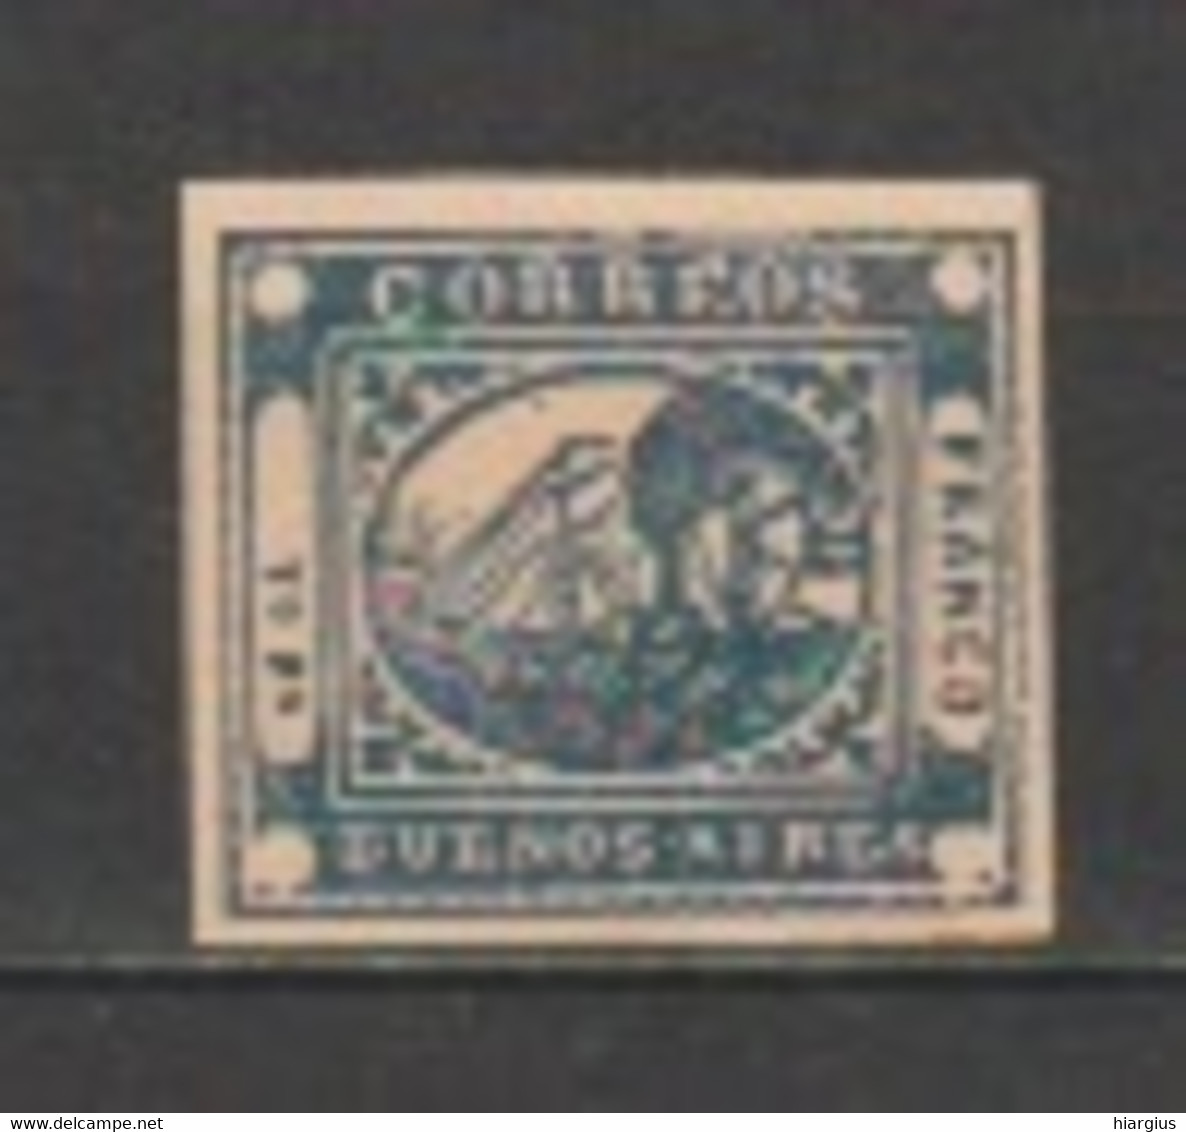 ARGENTINA- Buenos Aires- Scott # 8. -Catalog Value $ 600.00 - Buenos Aires (1858-1864)